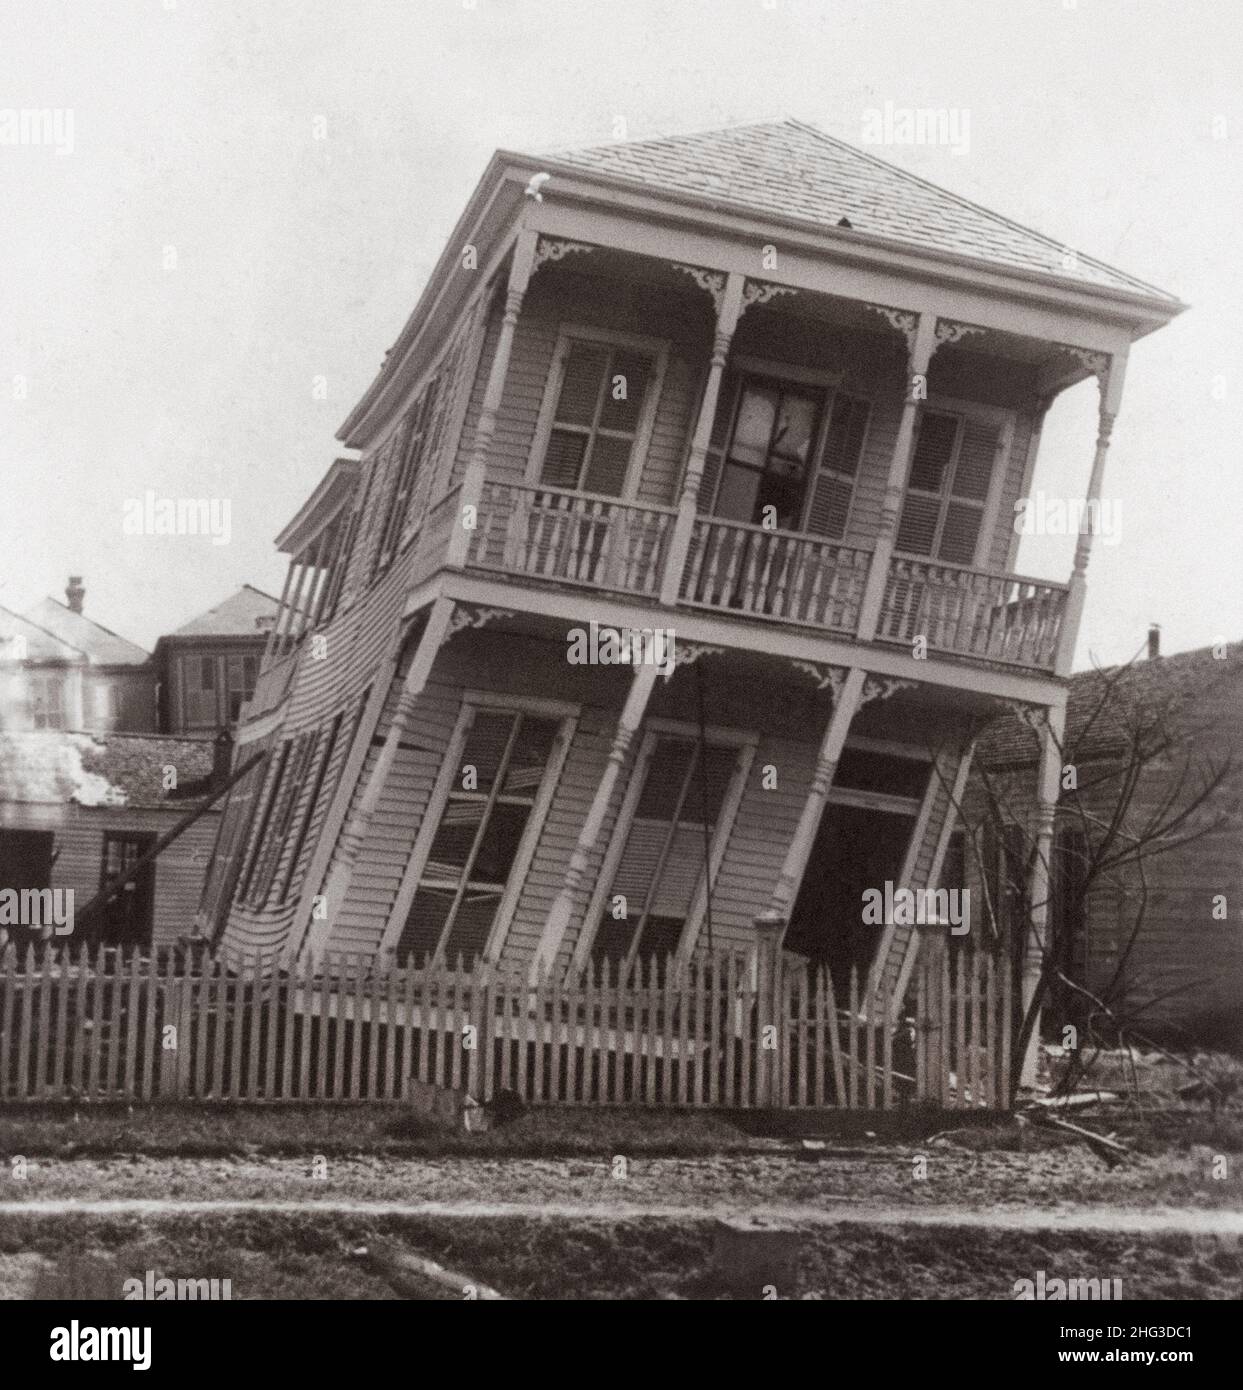 Photo d'archives de l'ouragan Galveston 1900 : une maison partiellement endommagée.Texas, États-Unis.Octobre 1900 Banque D'Images